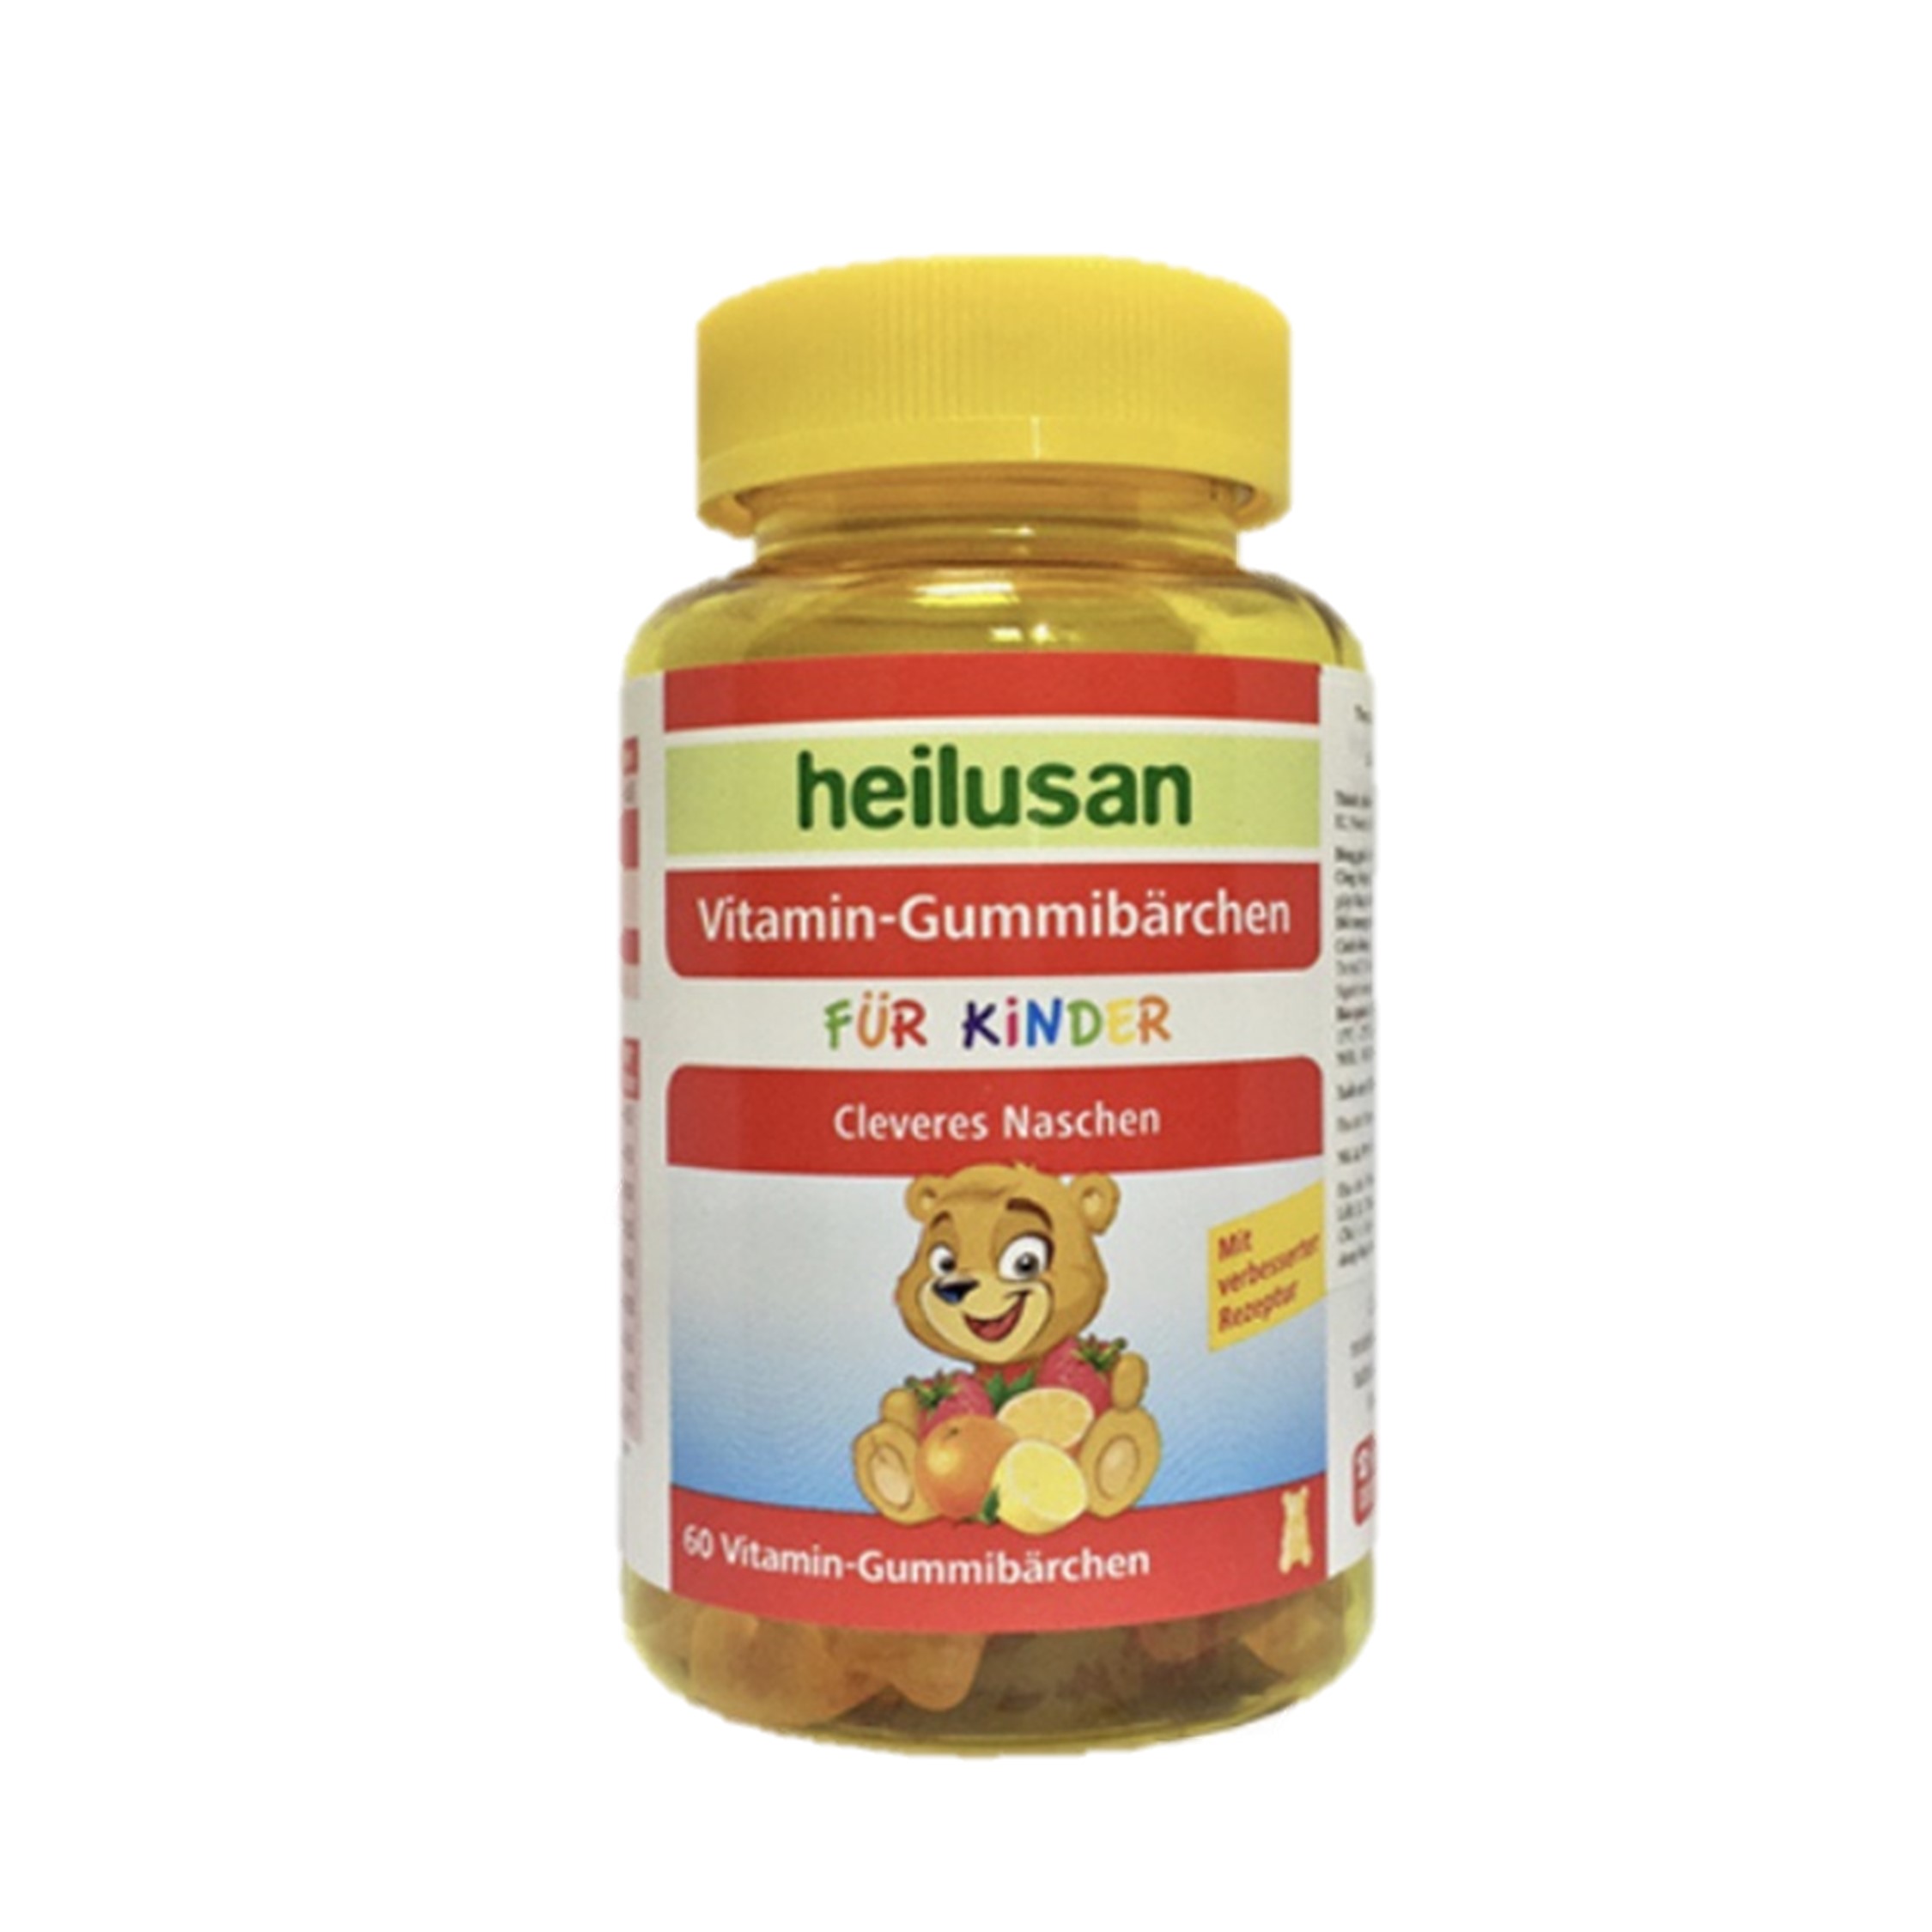 heilusan-vitamin-gummibarchen-1